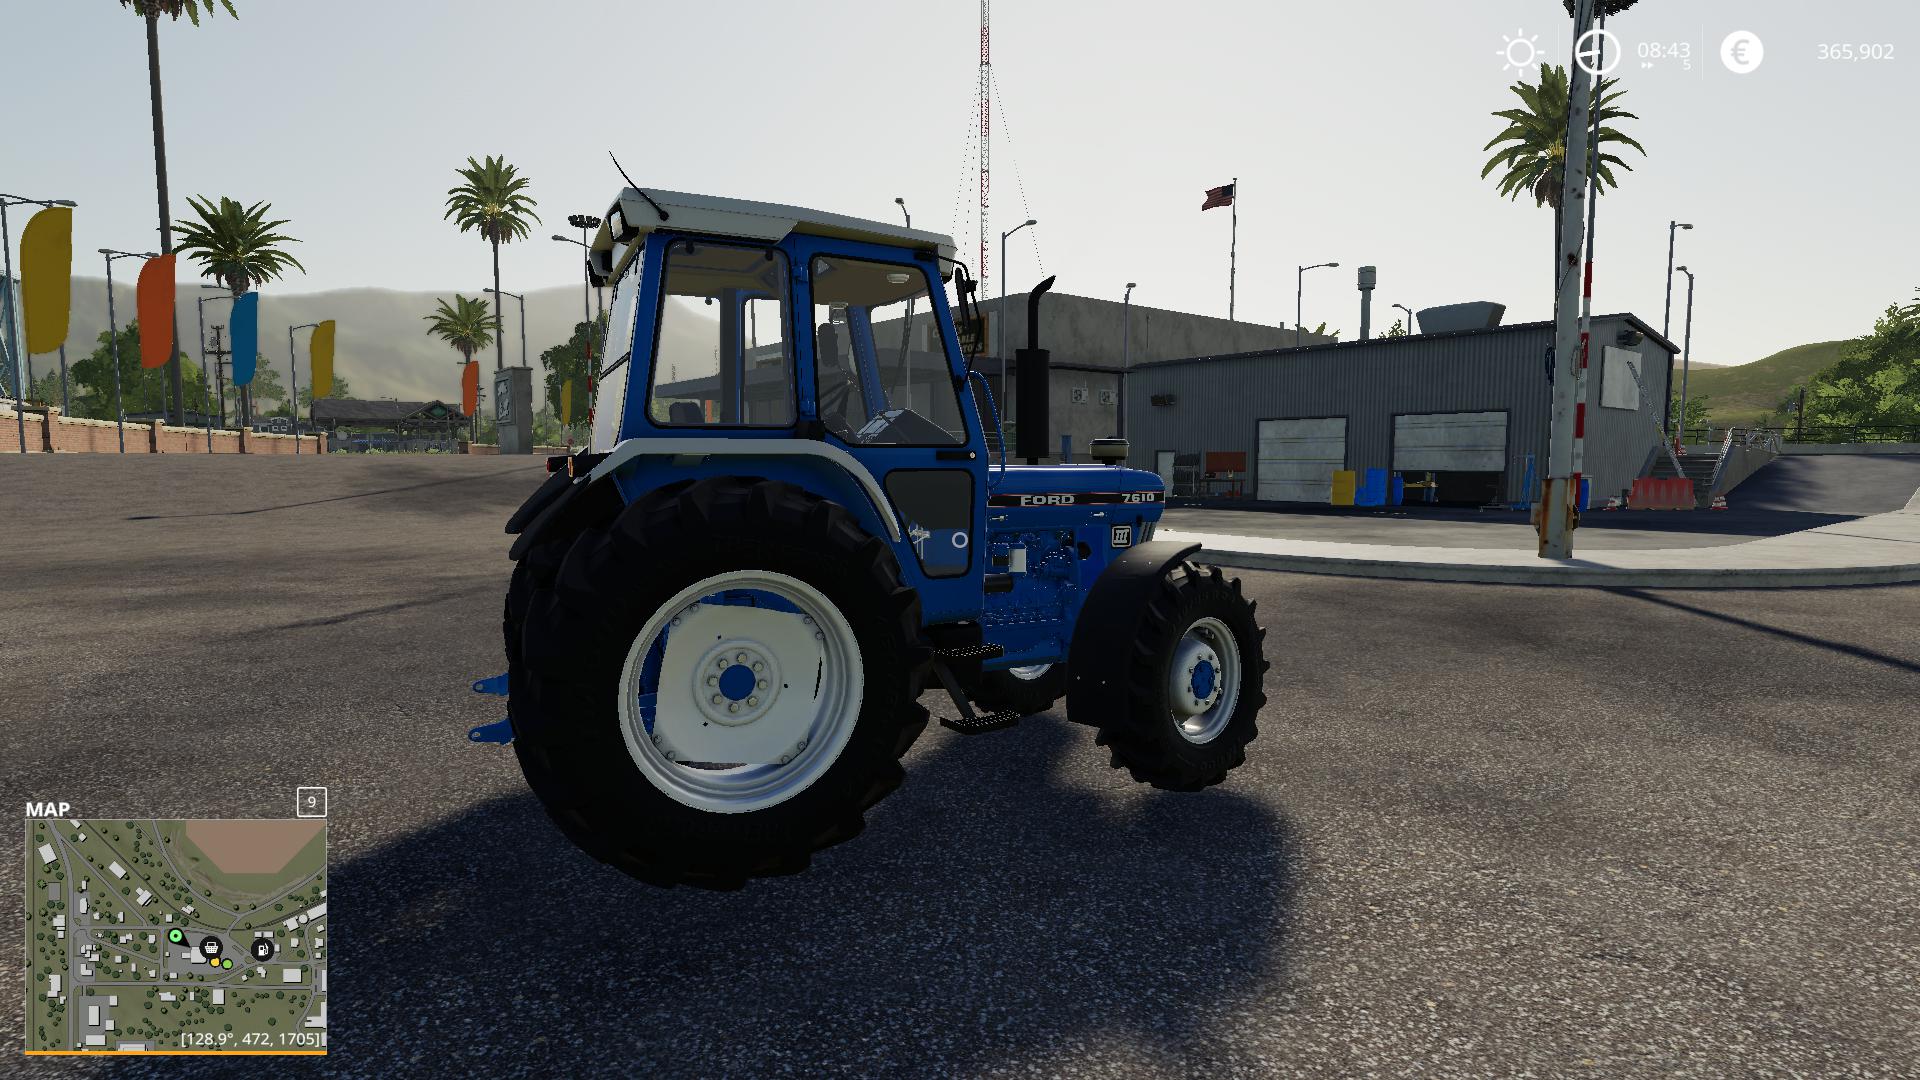 Fs19 Ford 7610 Tractor V10 Farming Simulator 19 Modsclub 1333